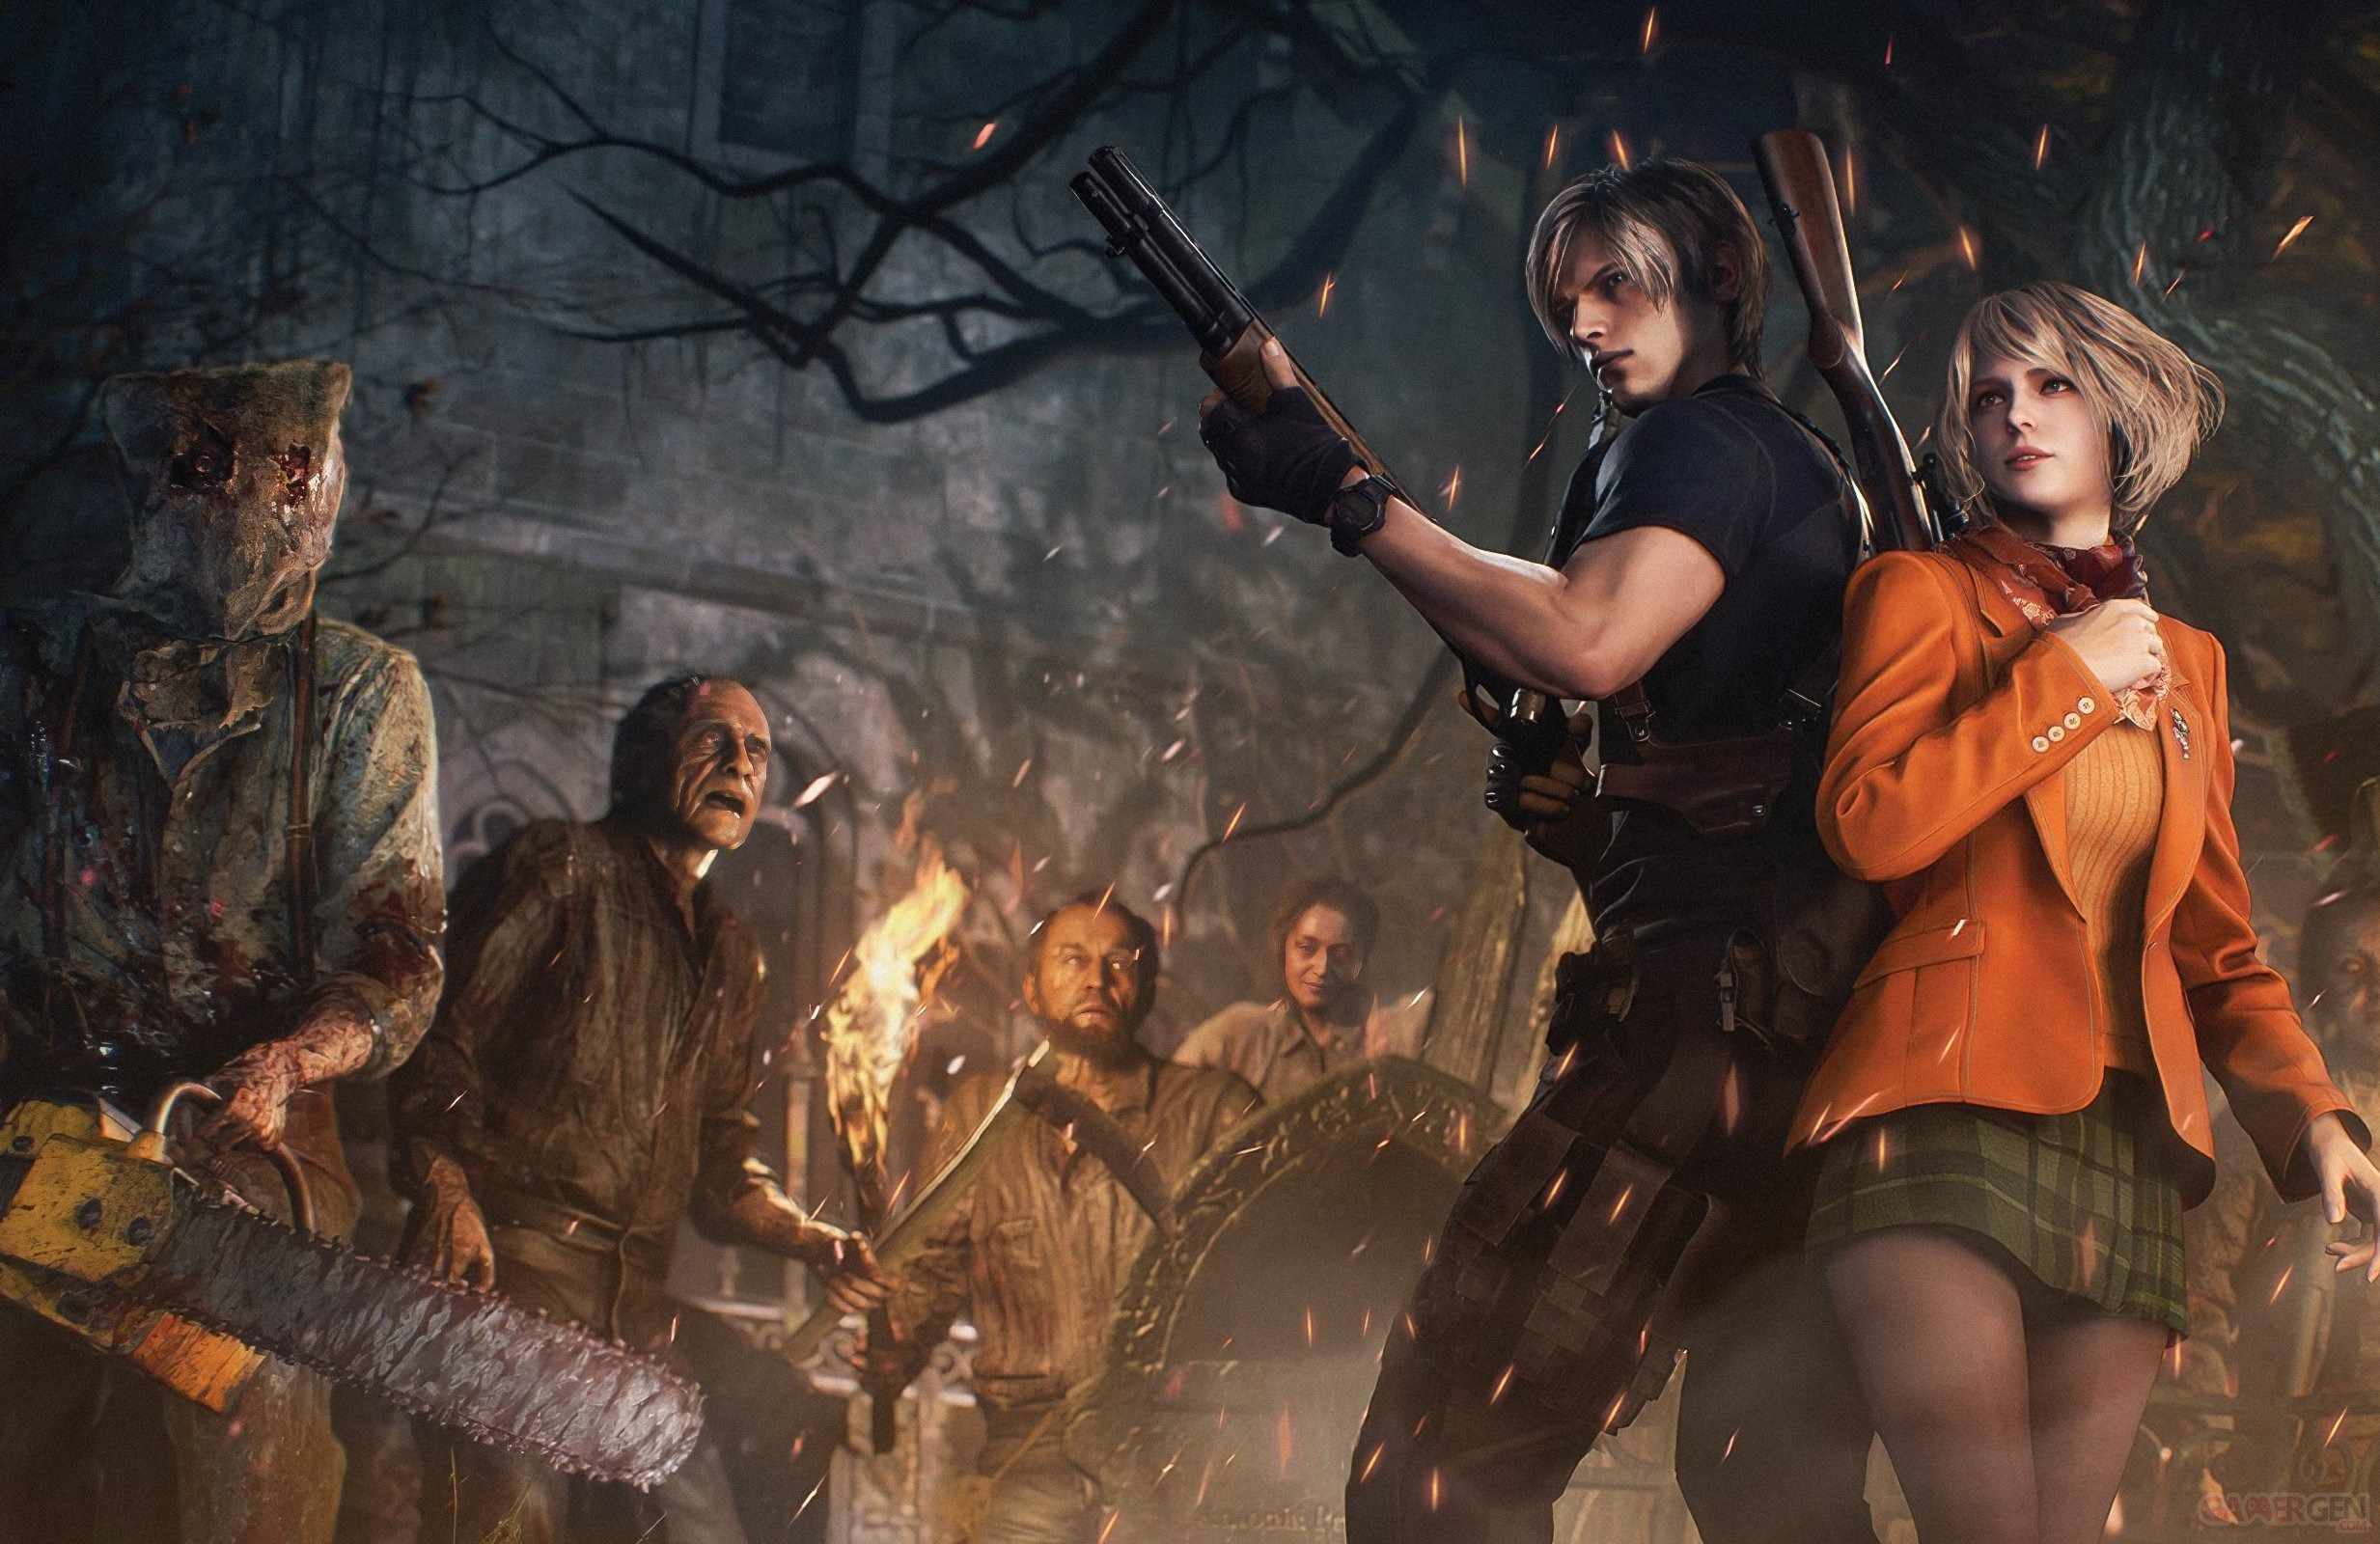 Resident Evil 4: Horário de liberação, duração do remake, pre-load e mais